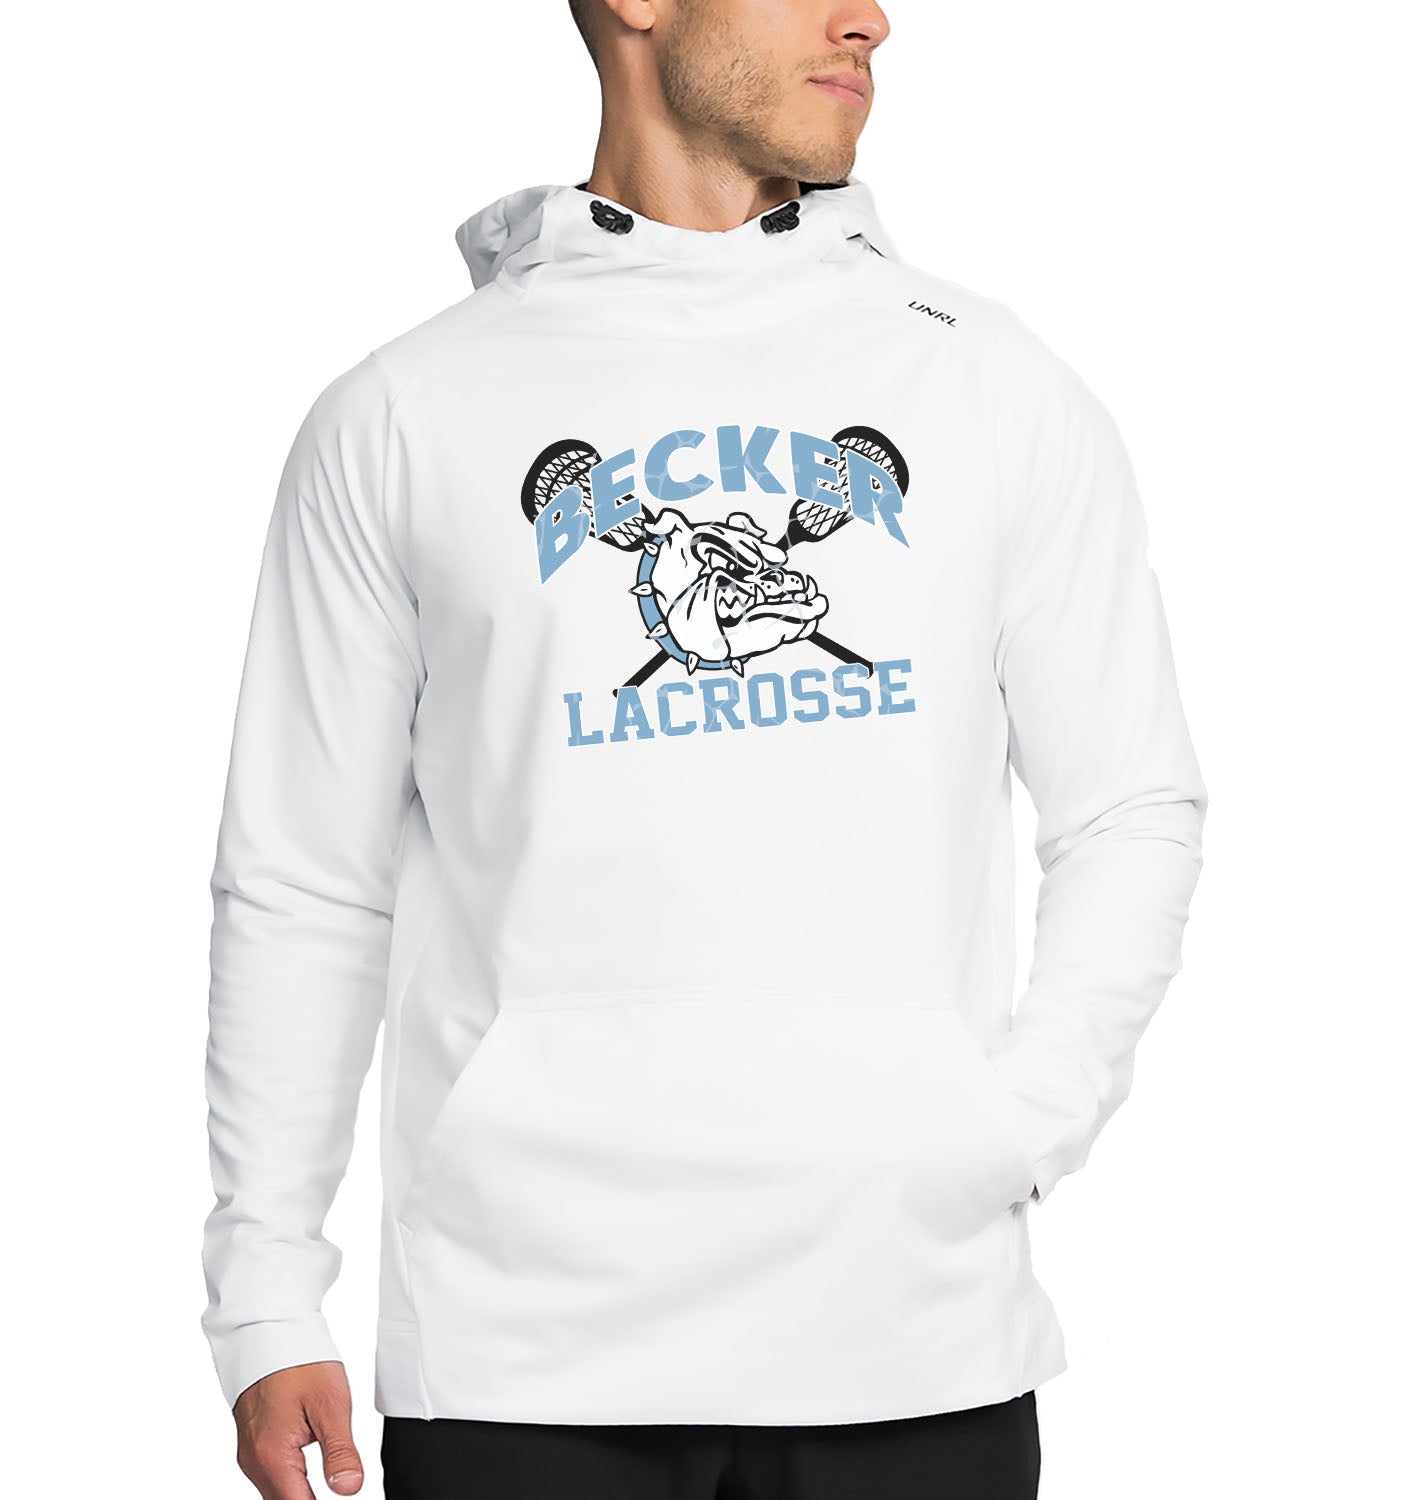 Becker Lacrosse // UNRL - Adult Crossover Hoodie